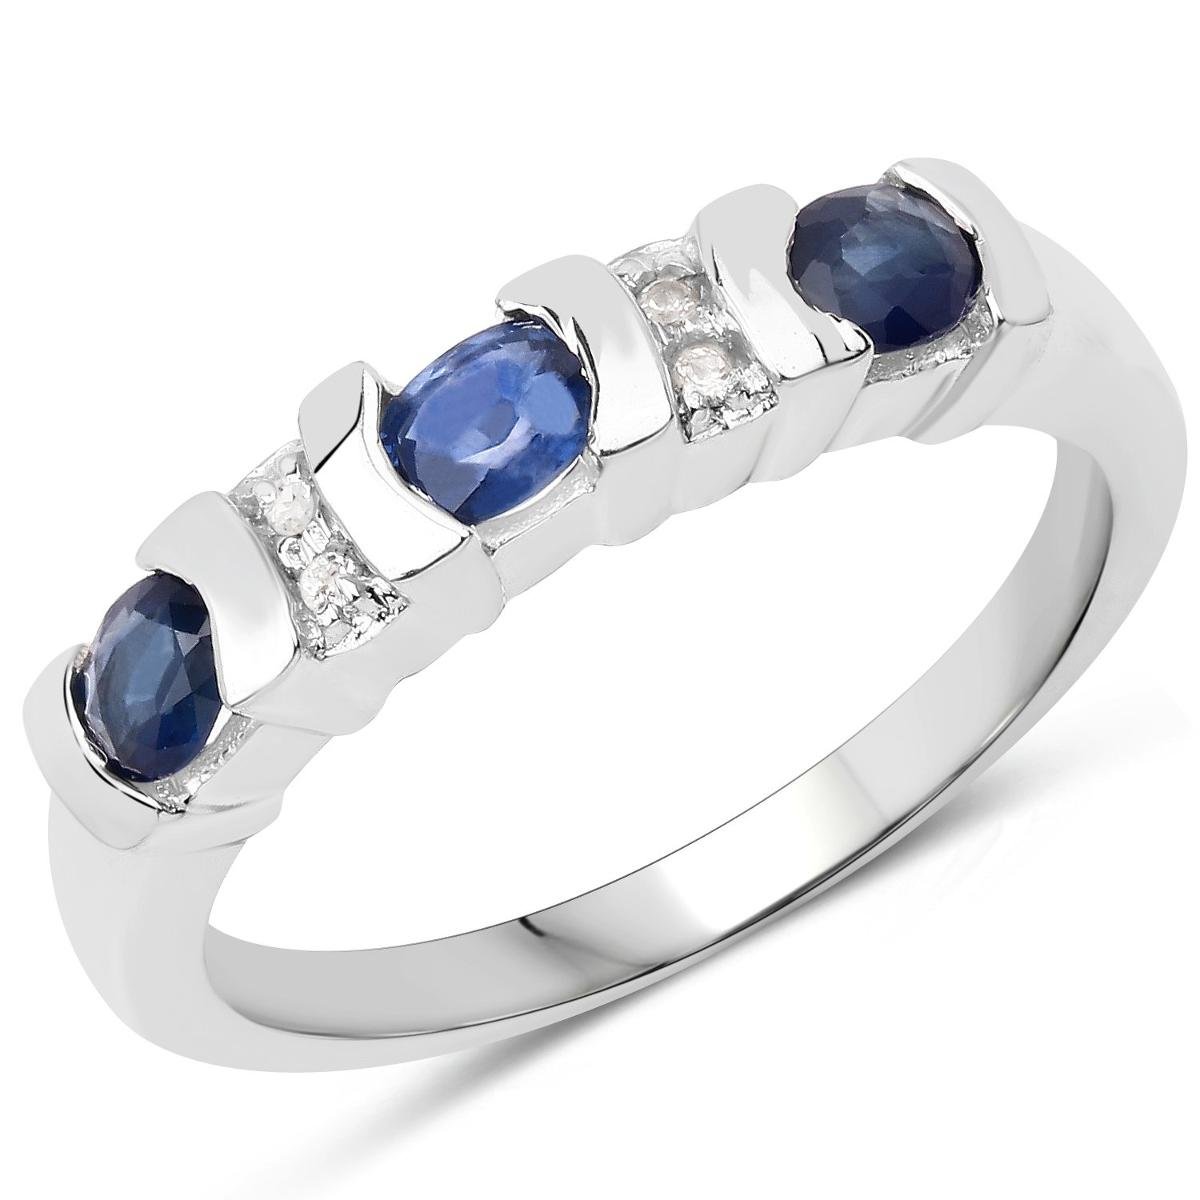 Zdjęcia - Pierścionek Biżuteria Prana,  srebrny z szafirami niebieskimi i kryształami